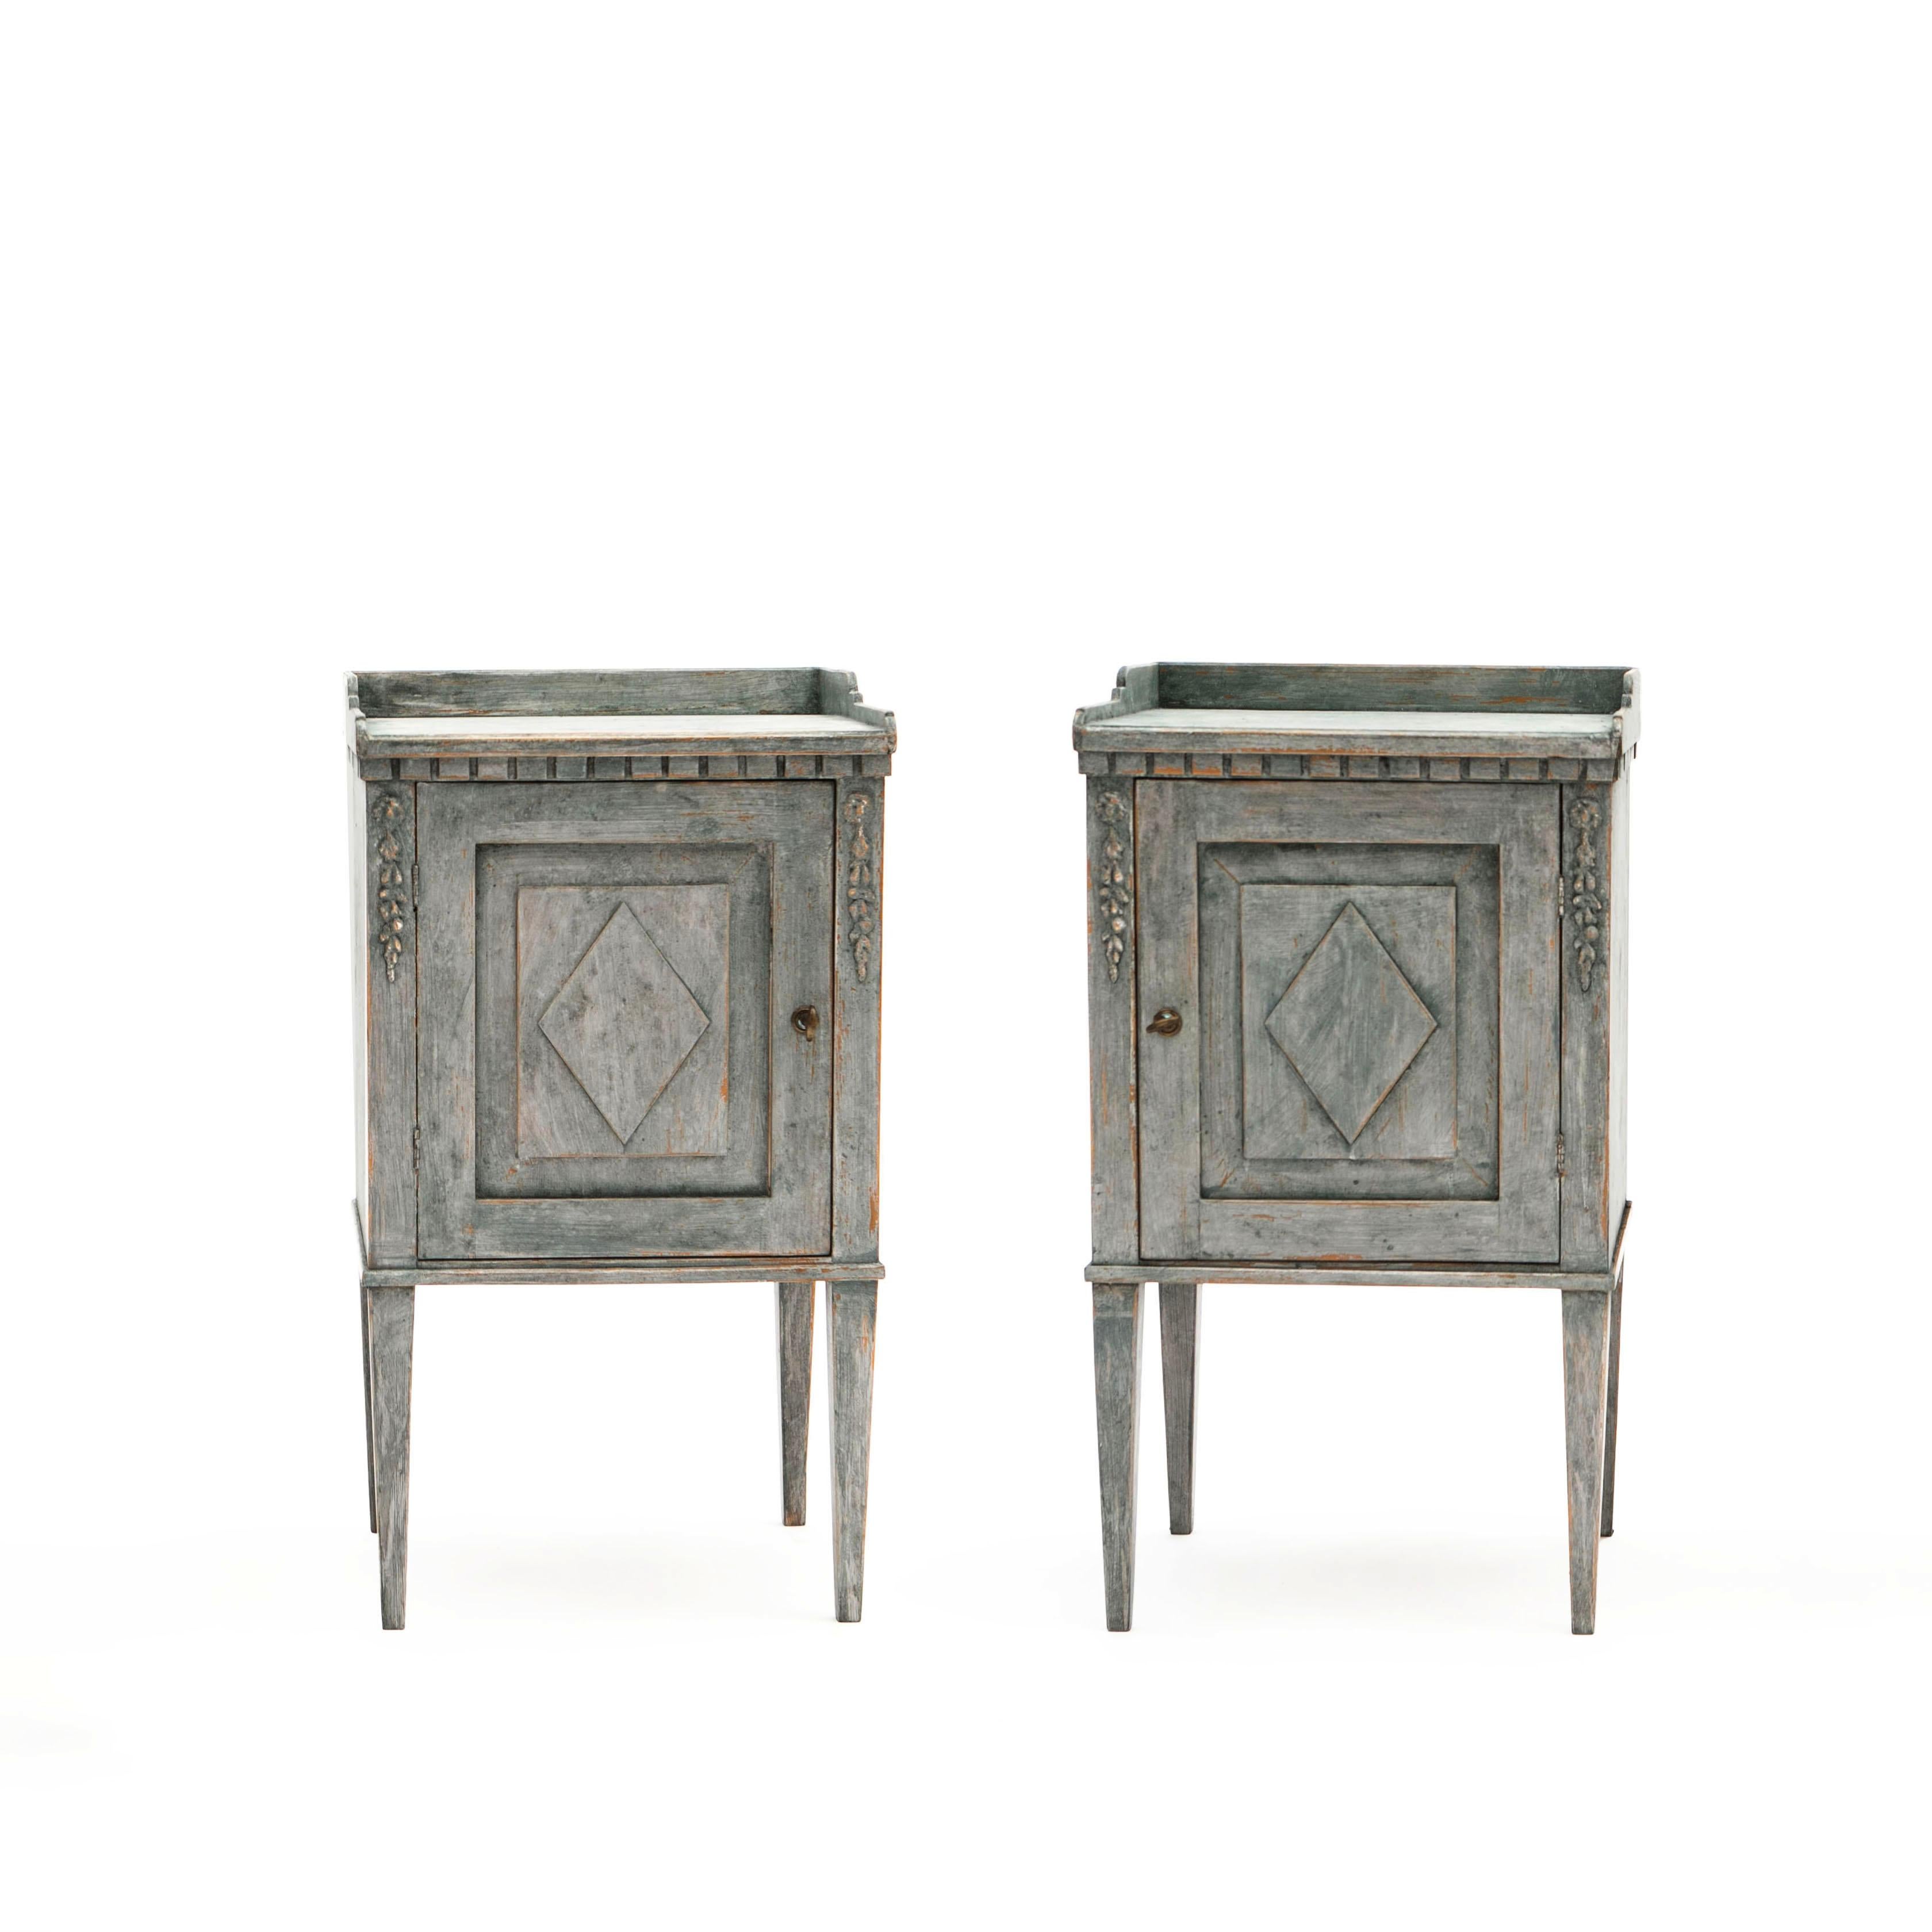 Paire de tables de chevet en bois peint de style gustavien suédois, datant du milieu du 19e siècle.
Ces armoires peintes en bleu-vert sont dotées d'un plateau rectangulaire à galerie trois-quarts, surmonté d'une moulure à denticules sculptée. La